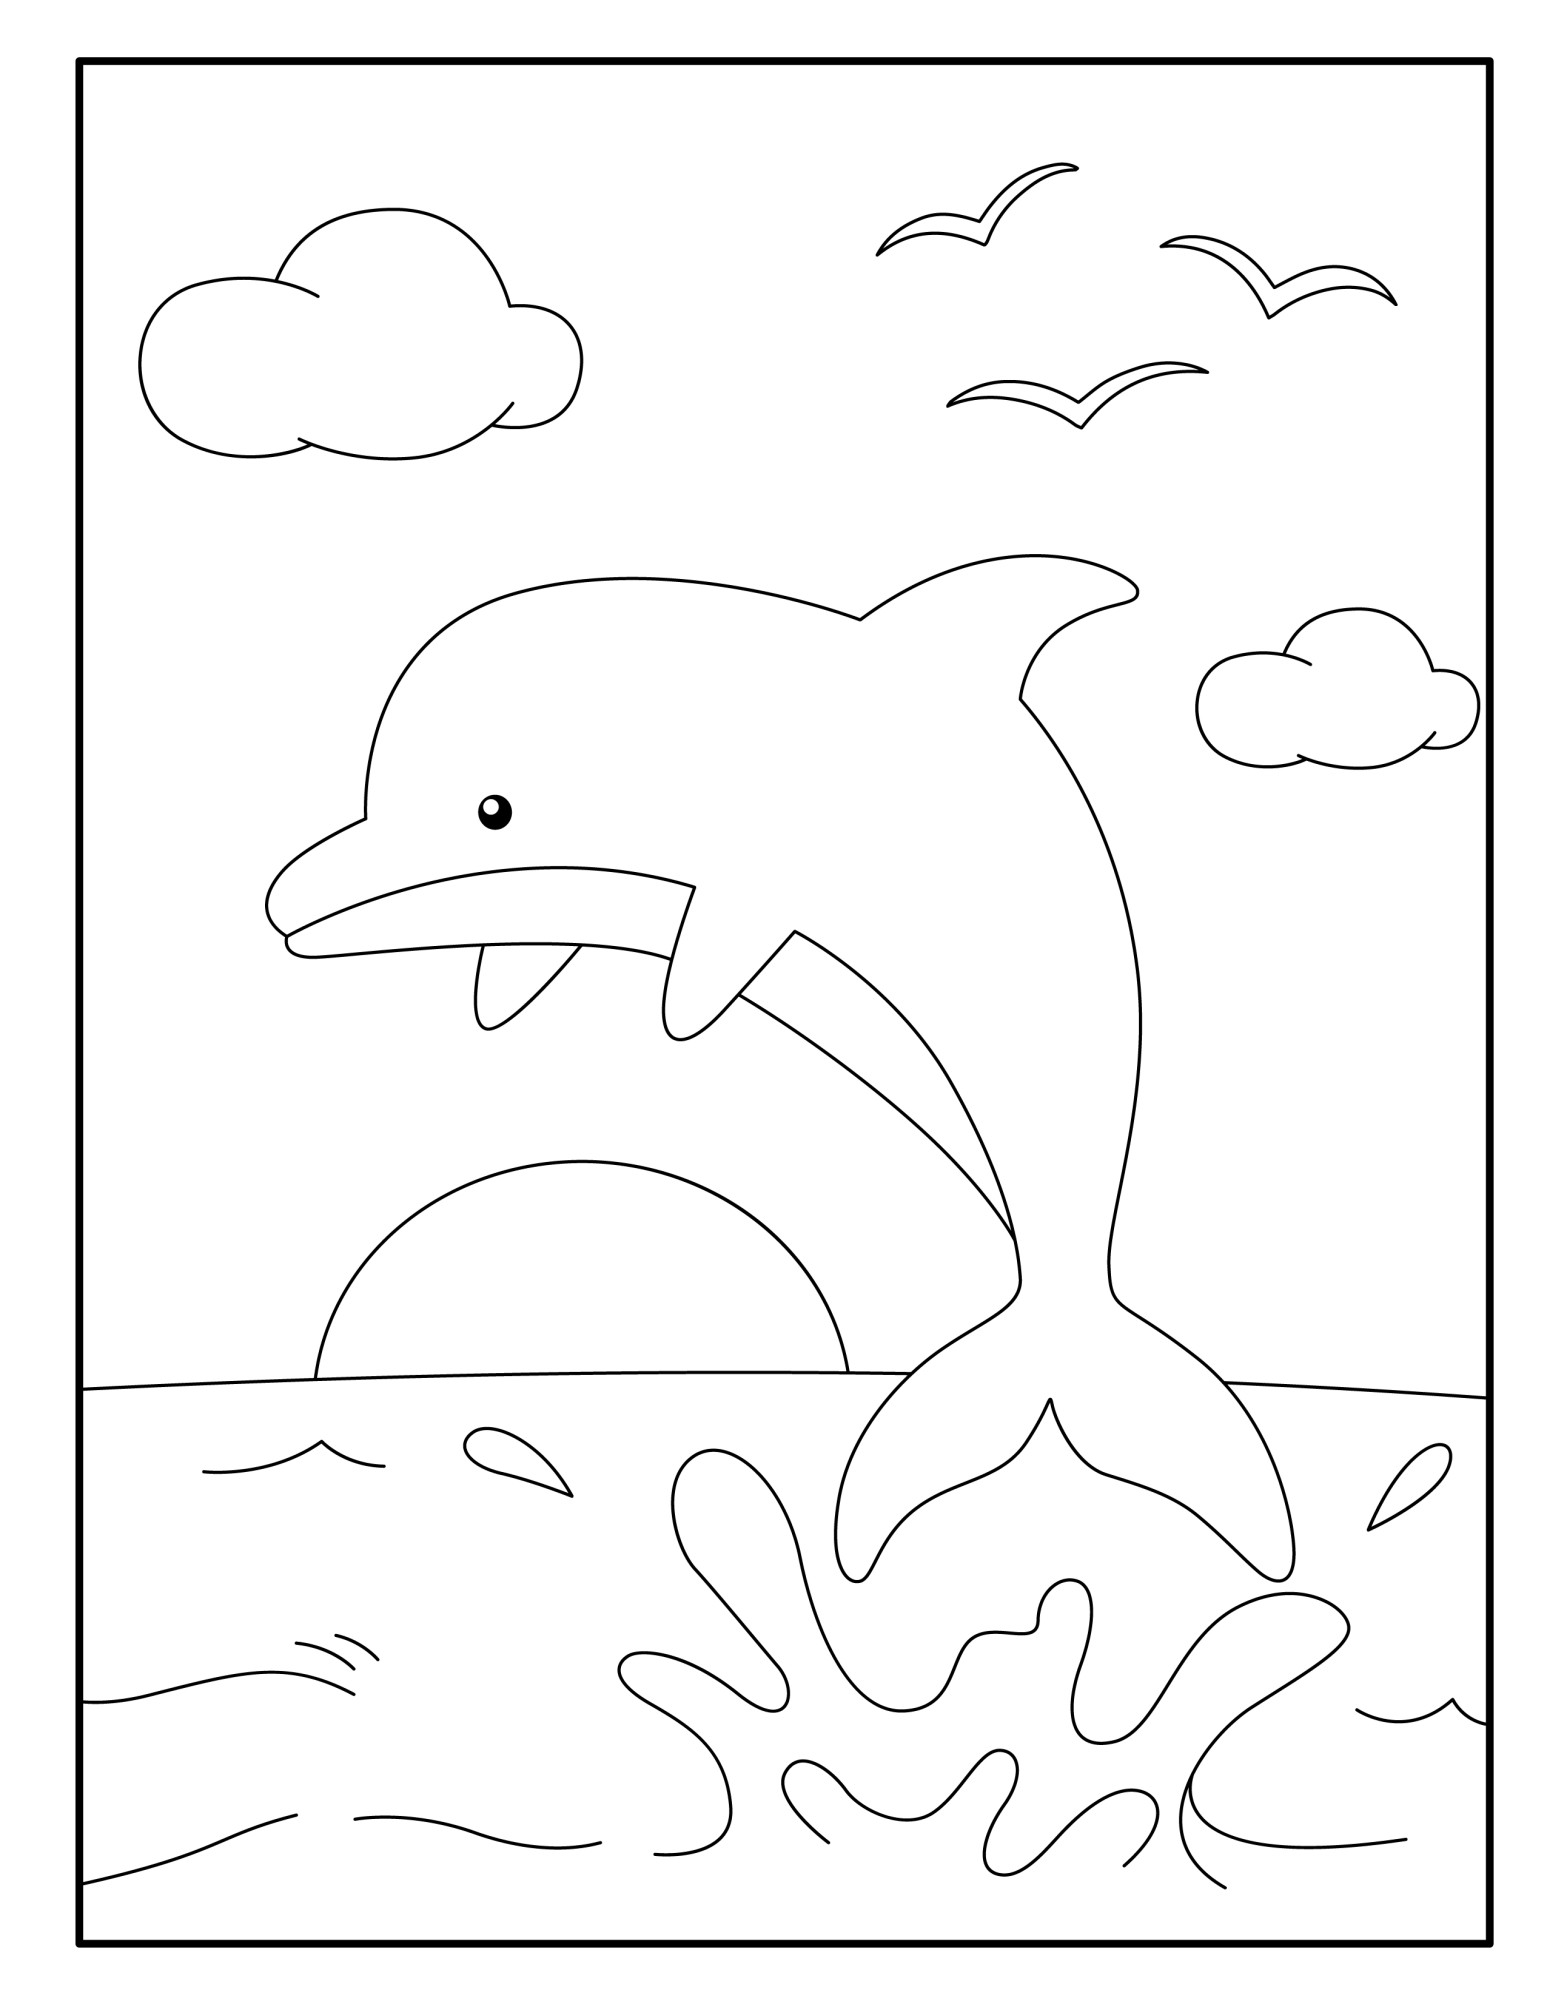 Раскраска для детей: дельфин над водой на фоне неба с чайками